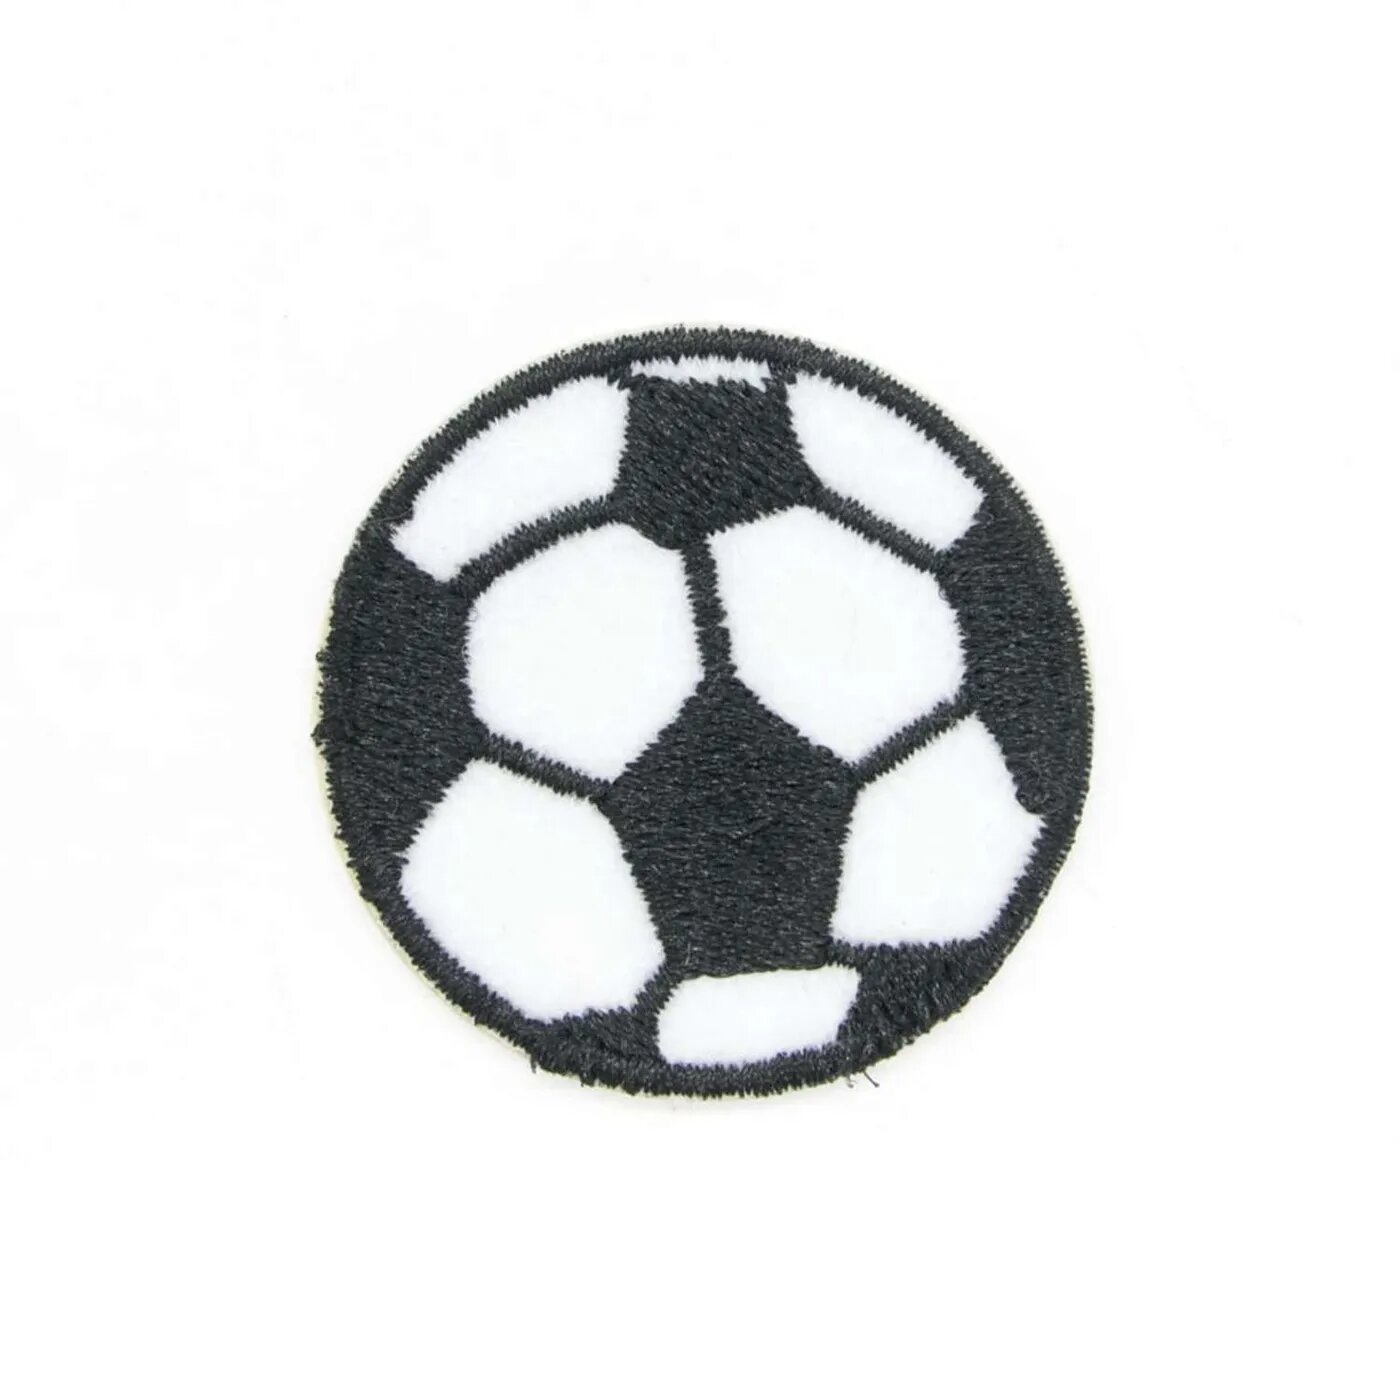 Термоаппликация Hobby Pro нашивка Футбольный мяч 3.9 см для ремонта и украшения одежды